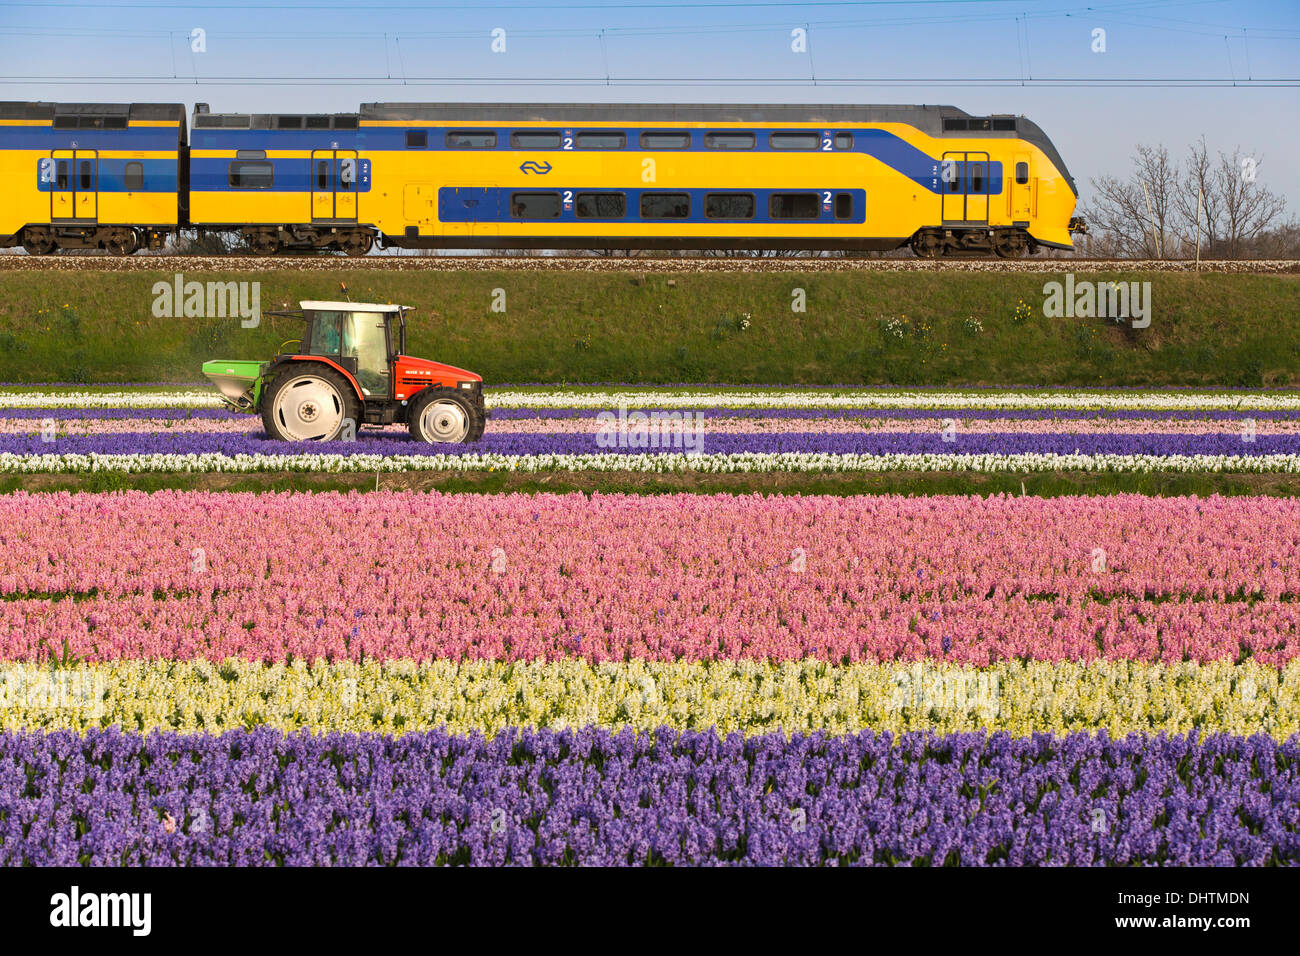 Niederlande, Vogelenzang, blühende Hyazinthen. Zug vorbei. Landwirt arbeiten auf dem Land mit Traktor Stockfoto